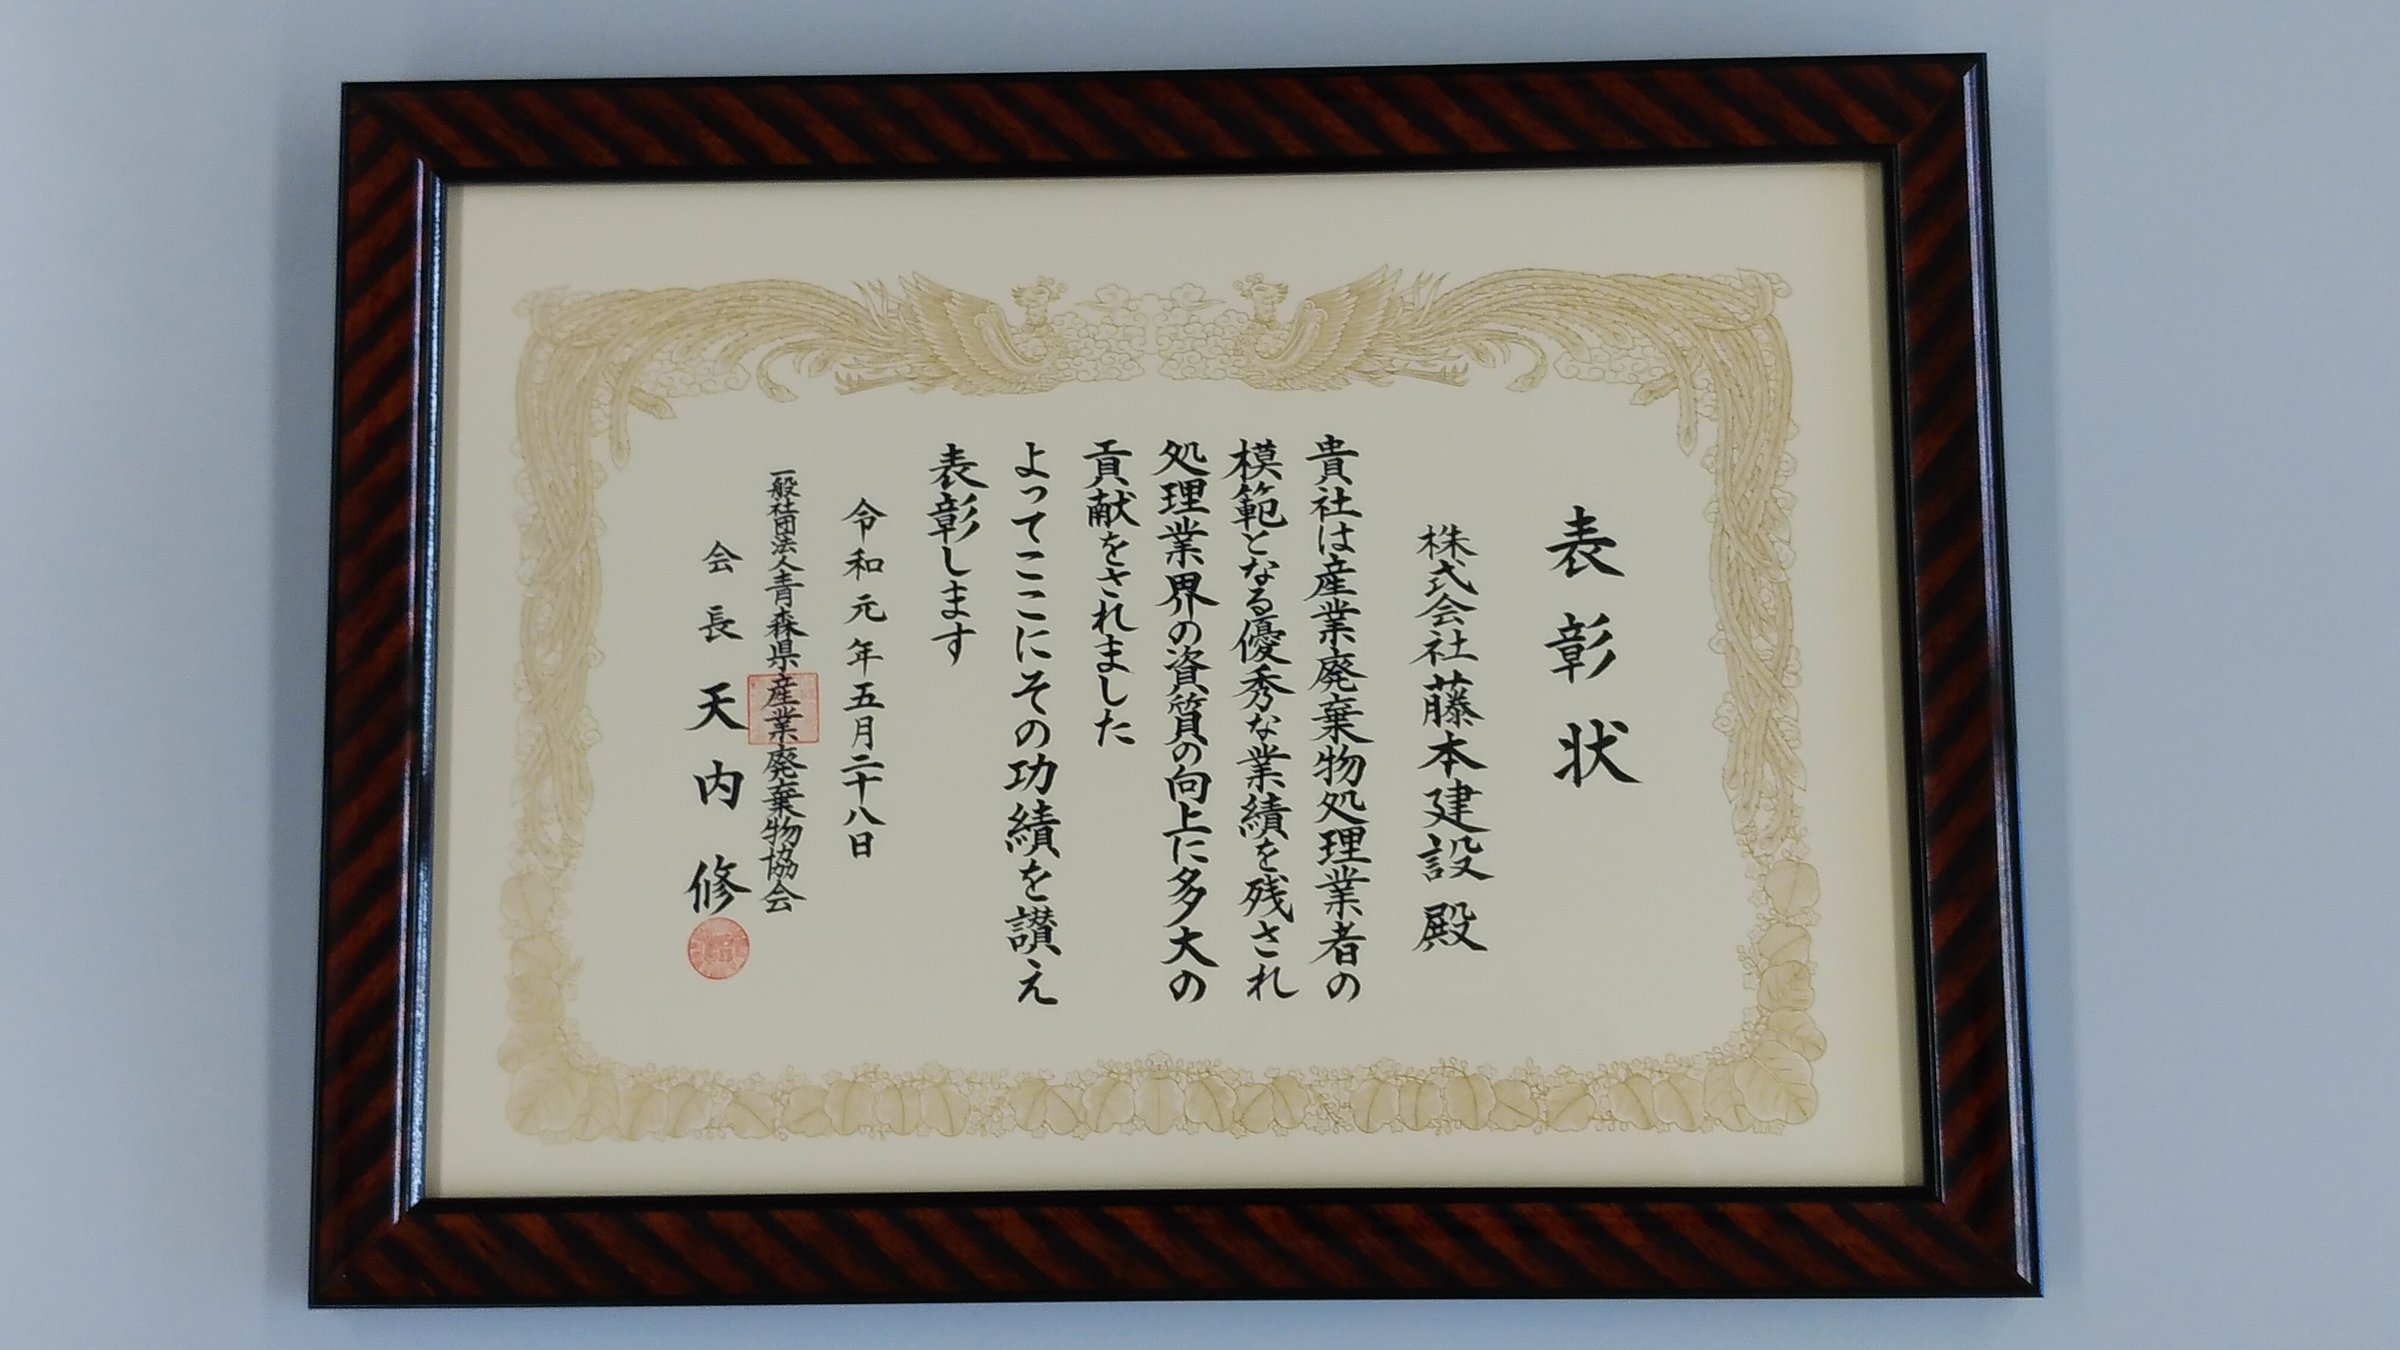 青森県産業廃棄物協会より表彰状をいただきました。